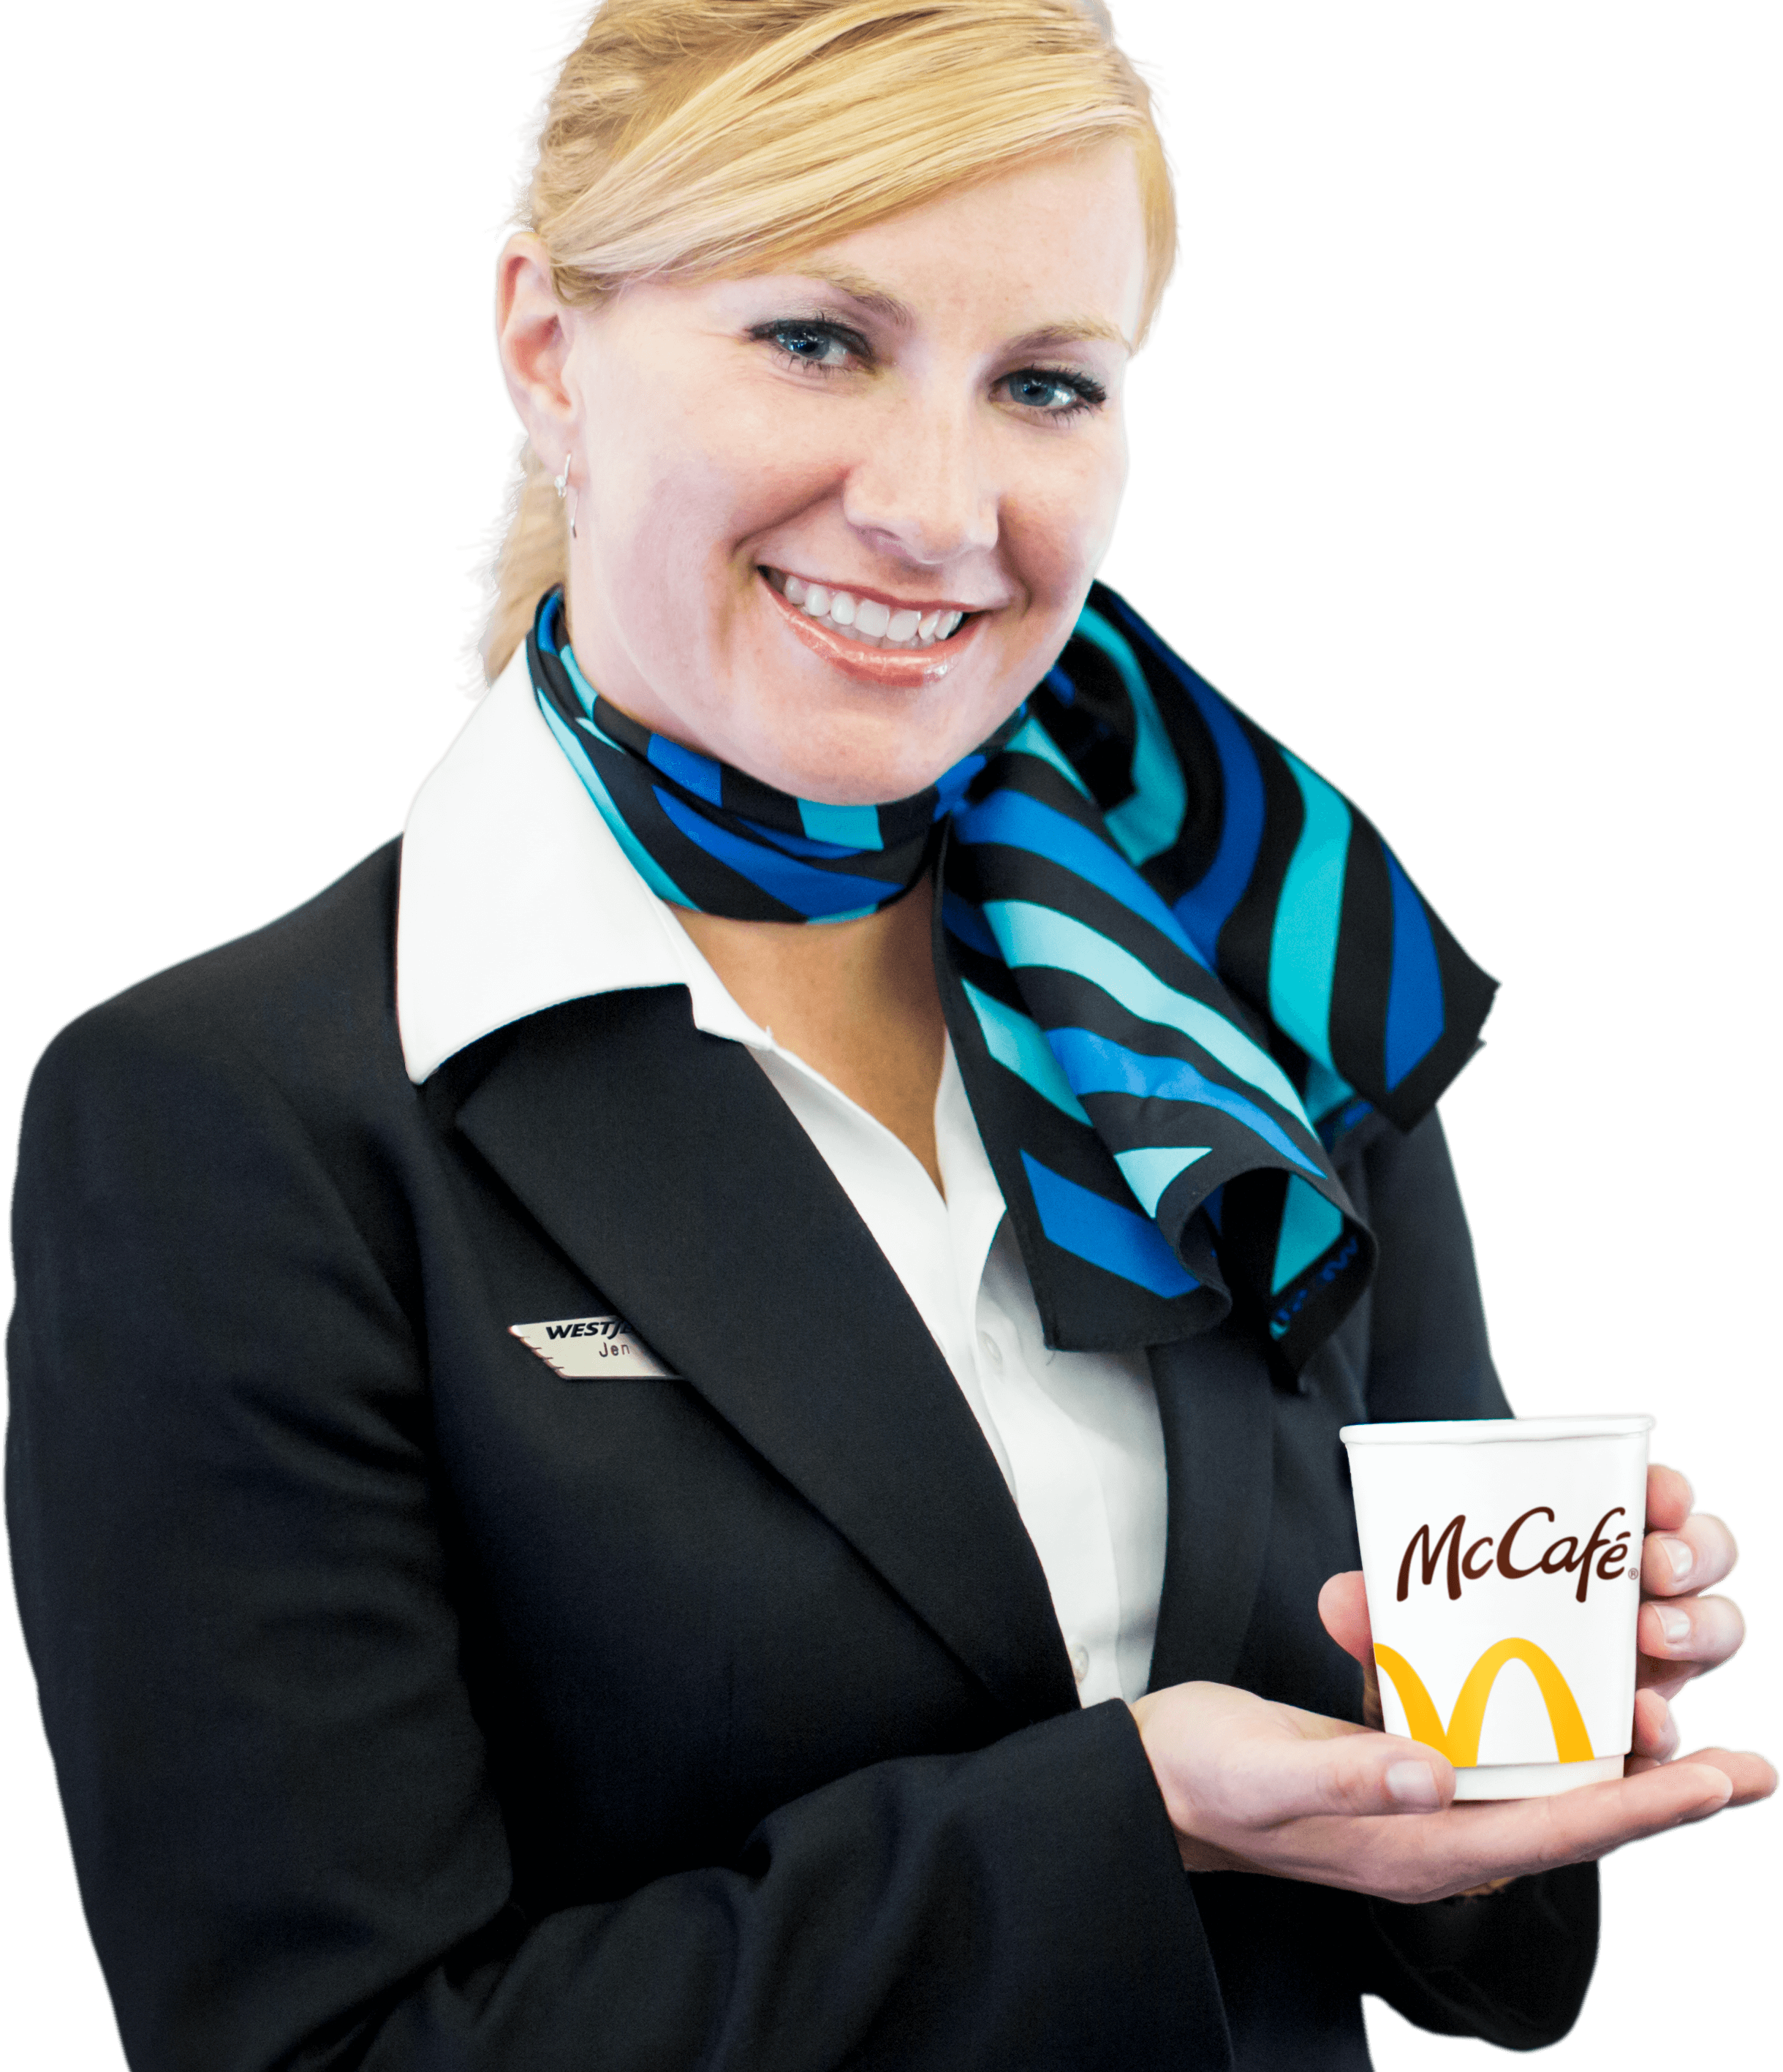 WESTJET Stewardess with McCafé Premium Roast Coffee